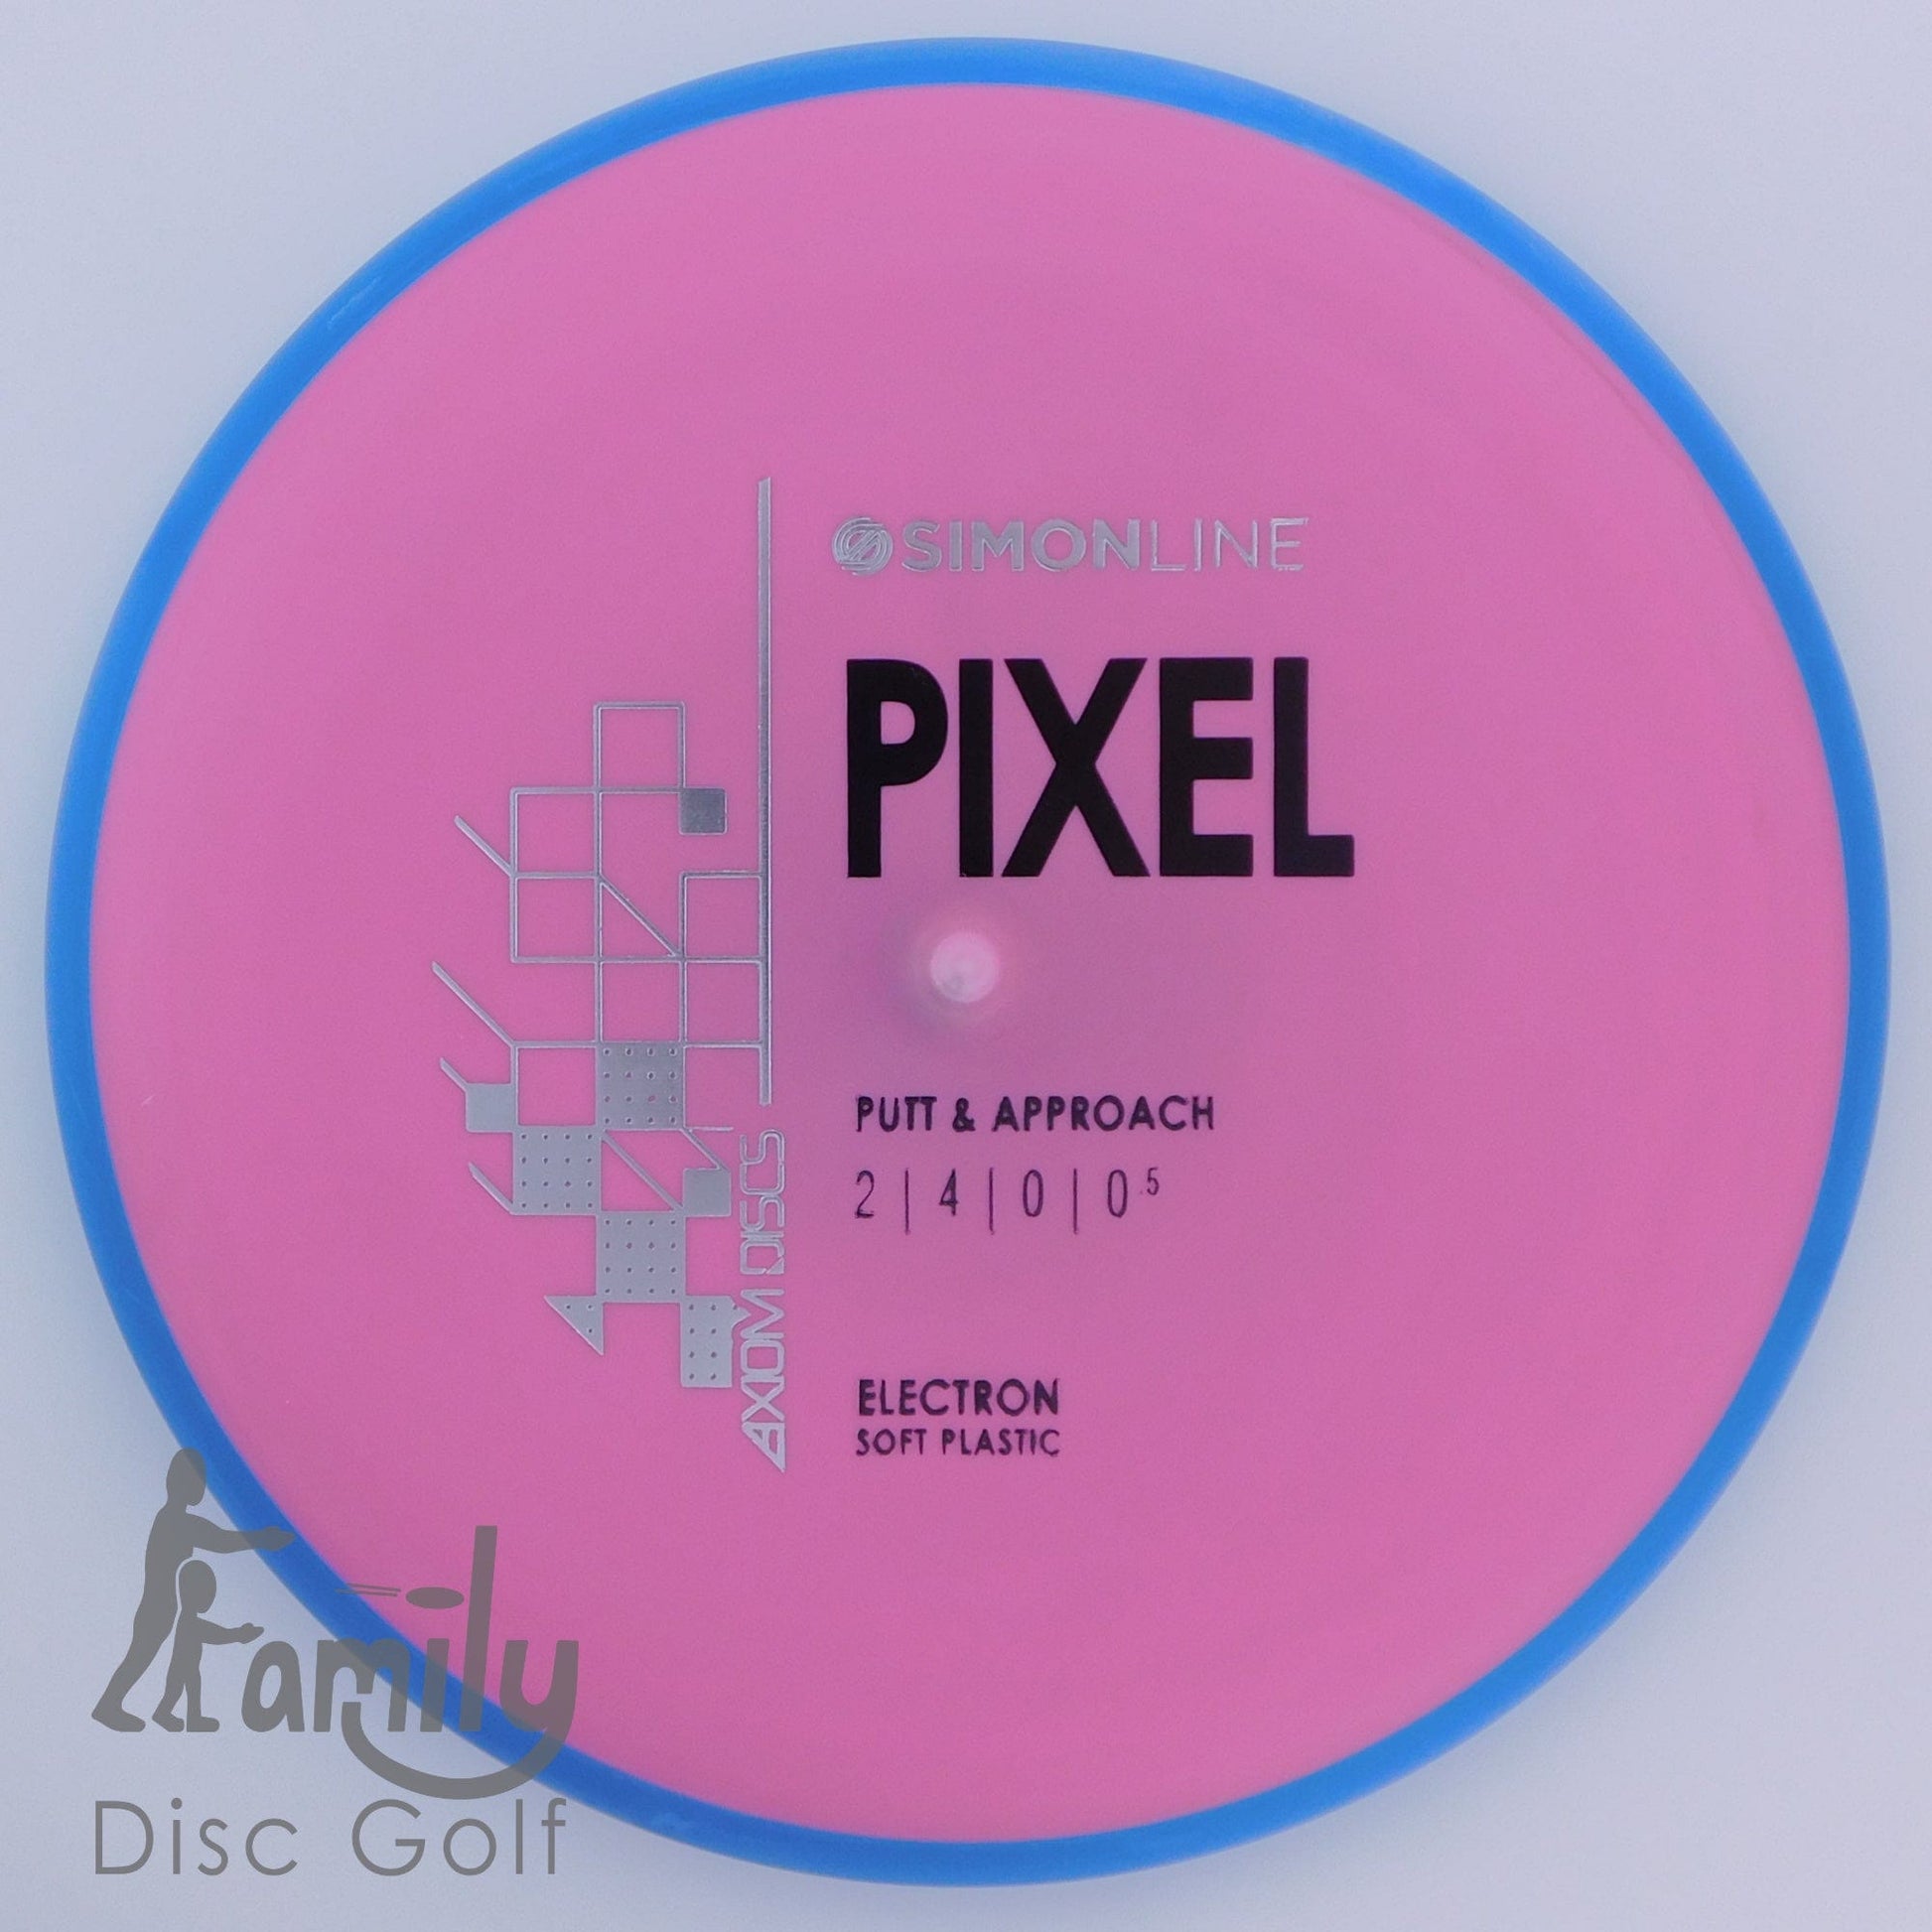 Axiom Pixel - Simon Line - Electron (Soft) 2│4│0│0.5 174.3g - Purple+Blue - Axiom Pixel - Electron Soft - 101871